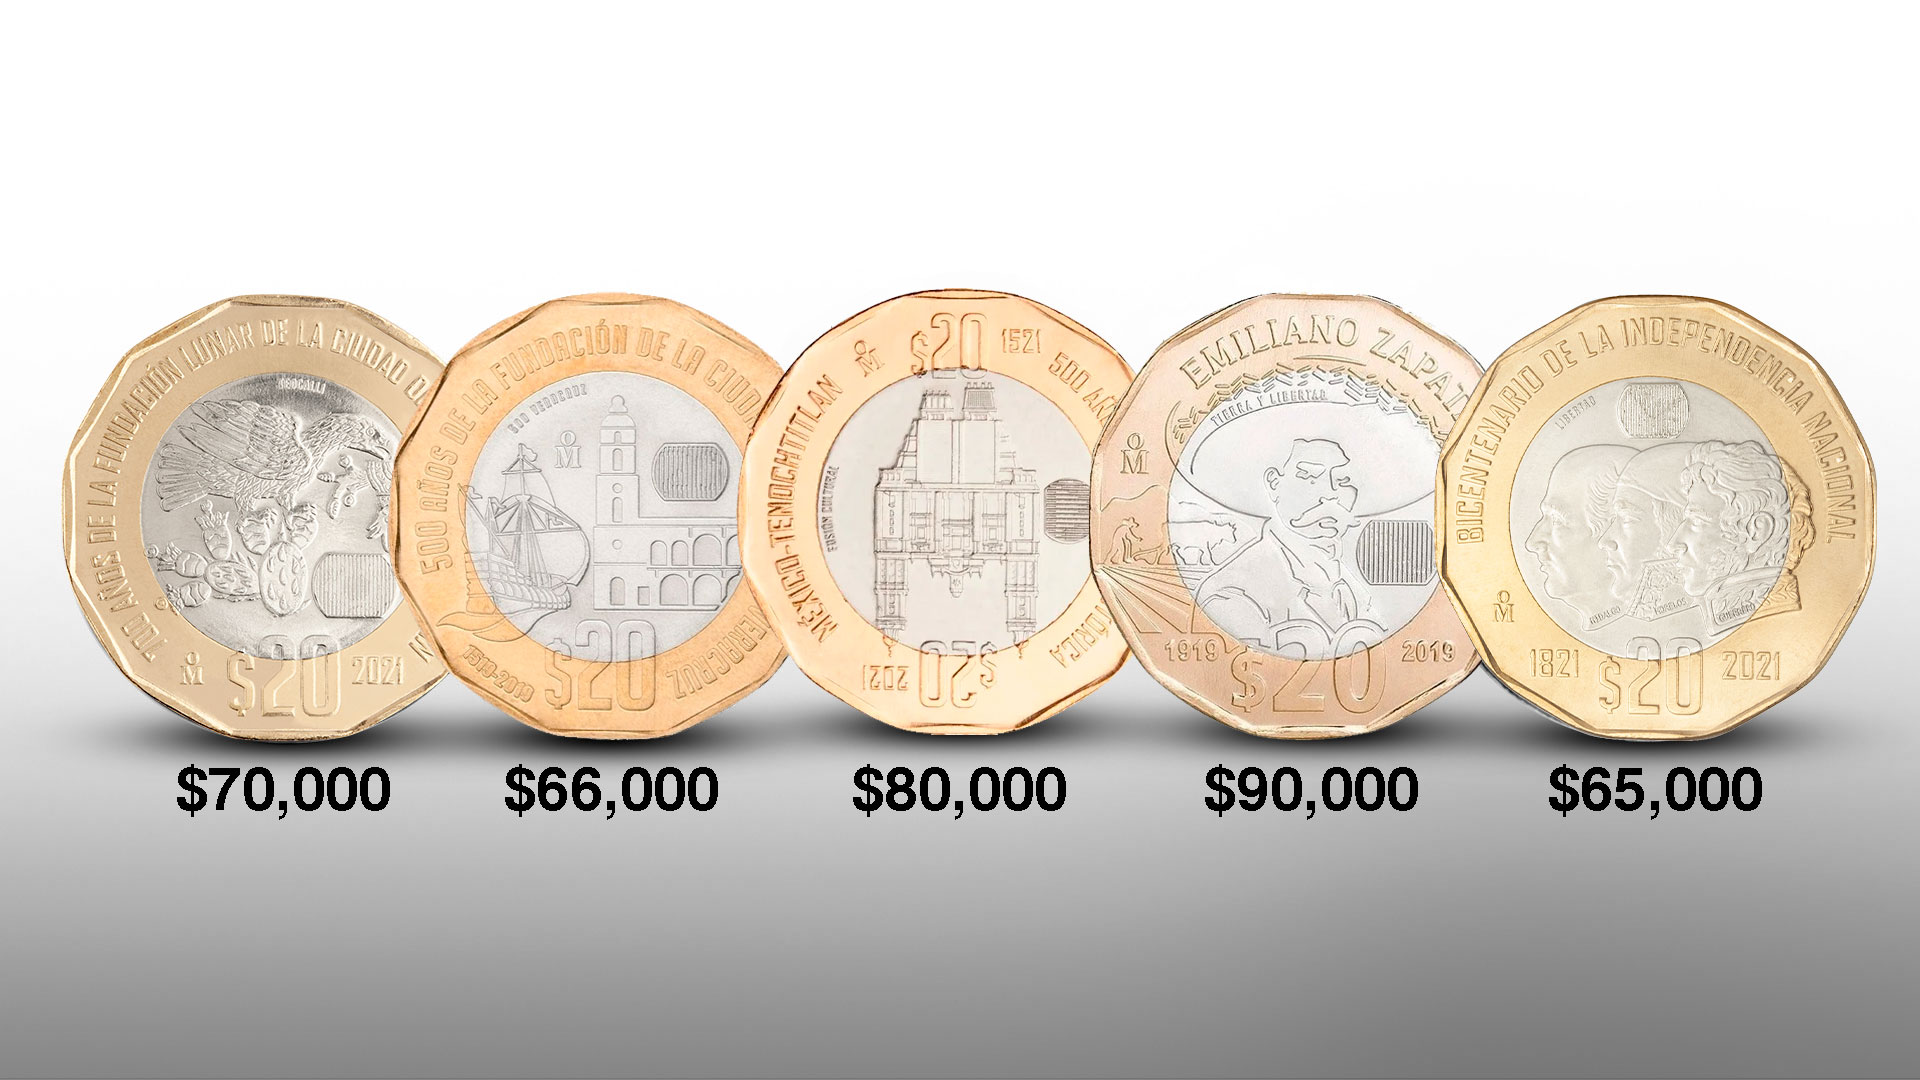 Ejemplo de monedas que se ofrecen a precios exorbitantes por internet, aunque no los valen. (Foto: Infobae)